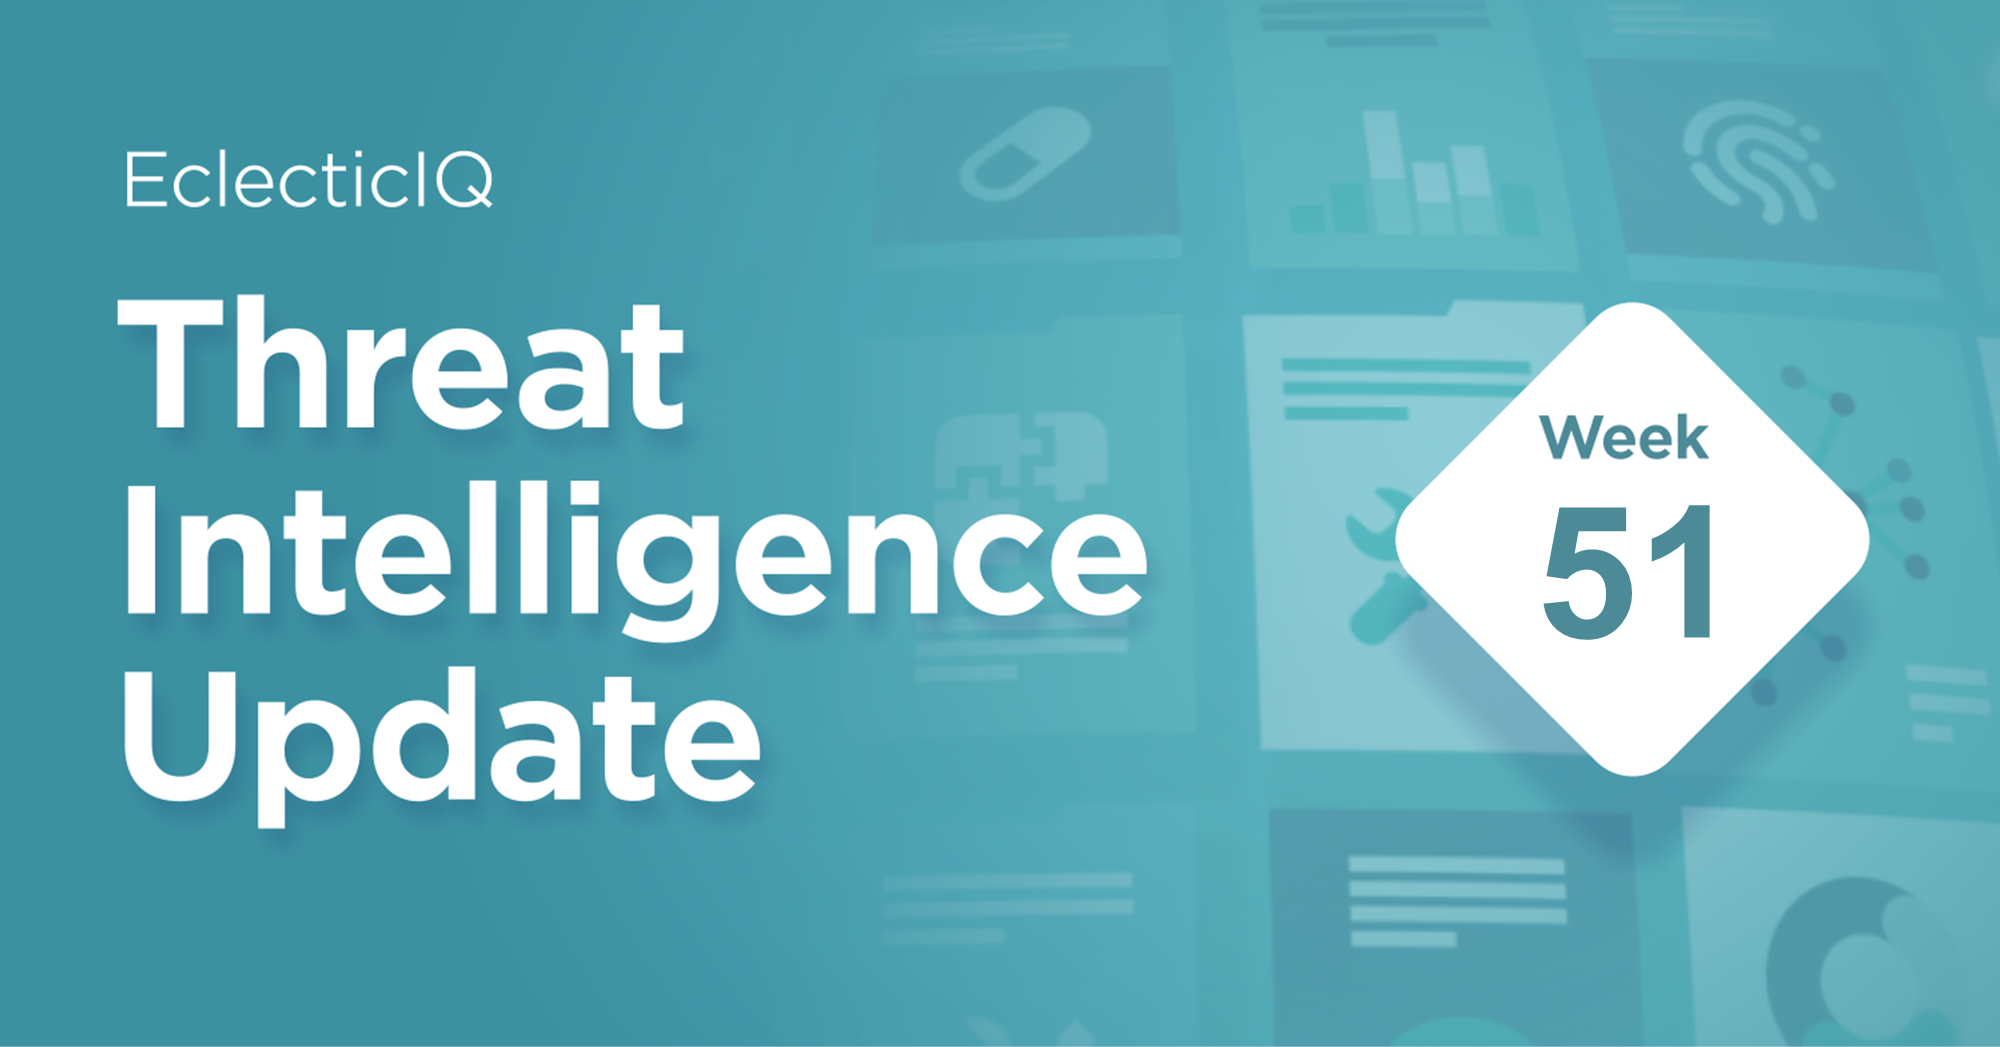 Threat Intelligence Update Week 51-biweekly Report